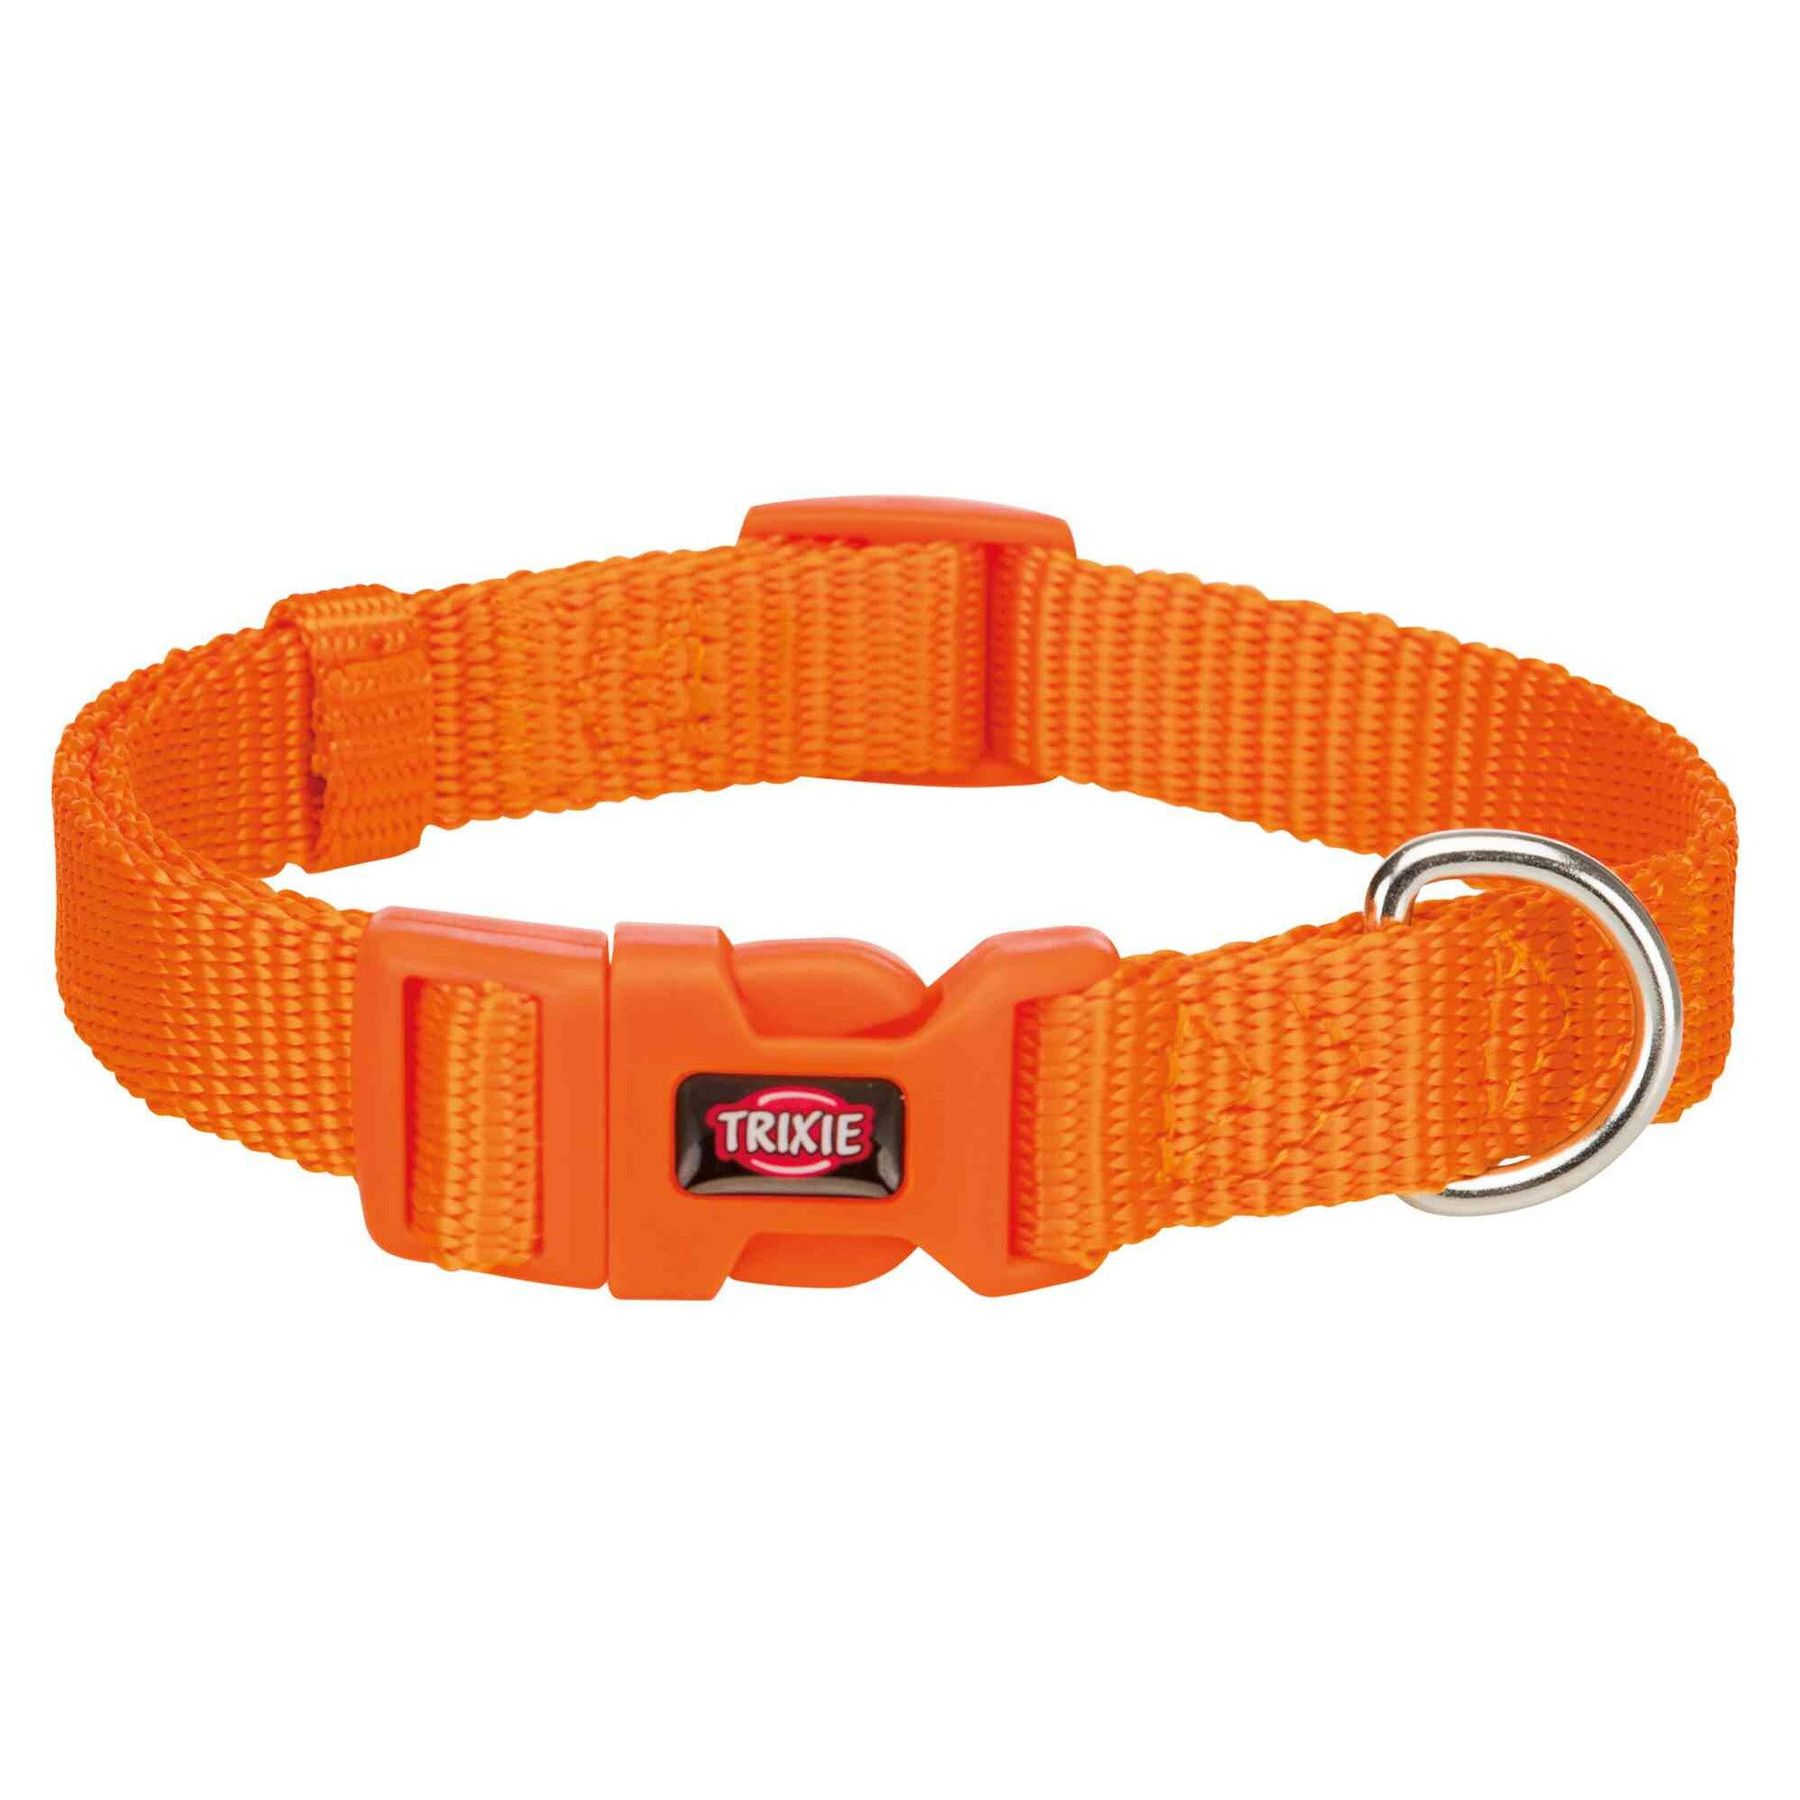 Нейлоновый ошейник для собак Trixie Premium XS-S 22-35 см / 10 мм (оранжевый)